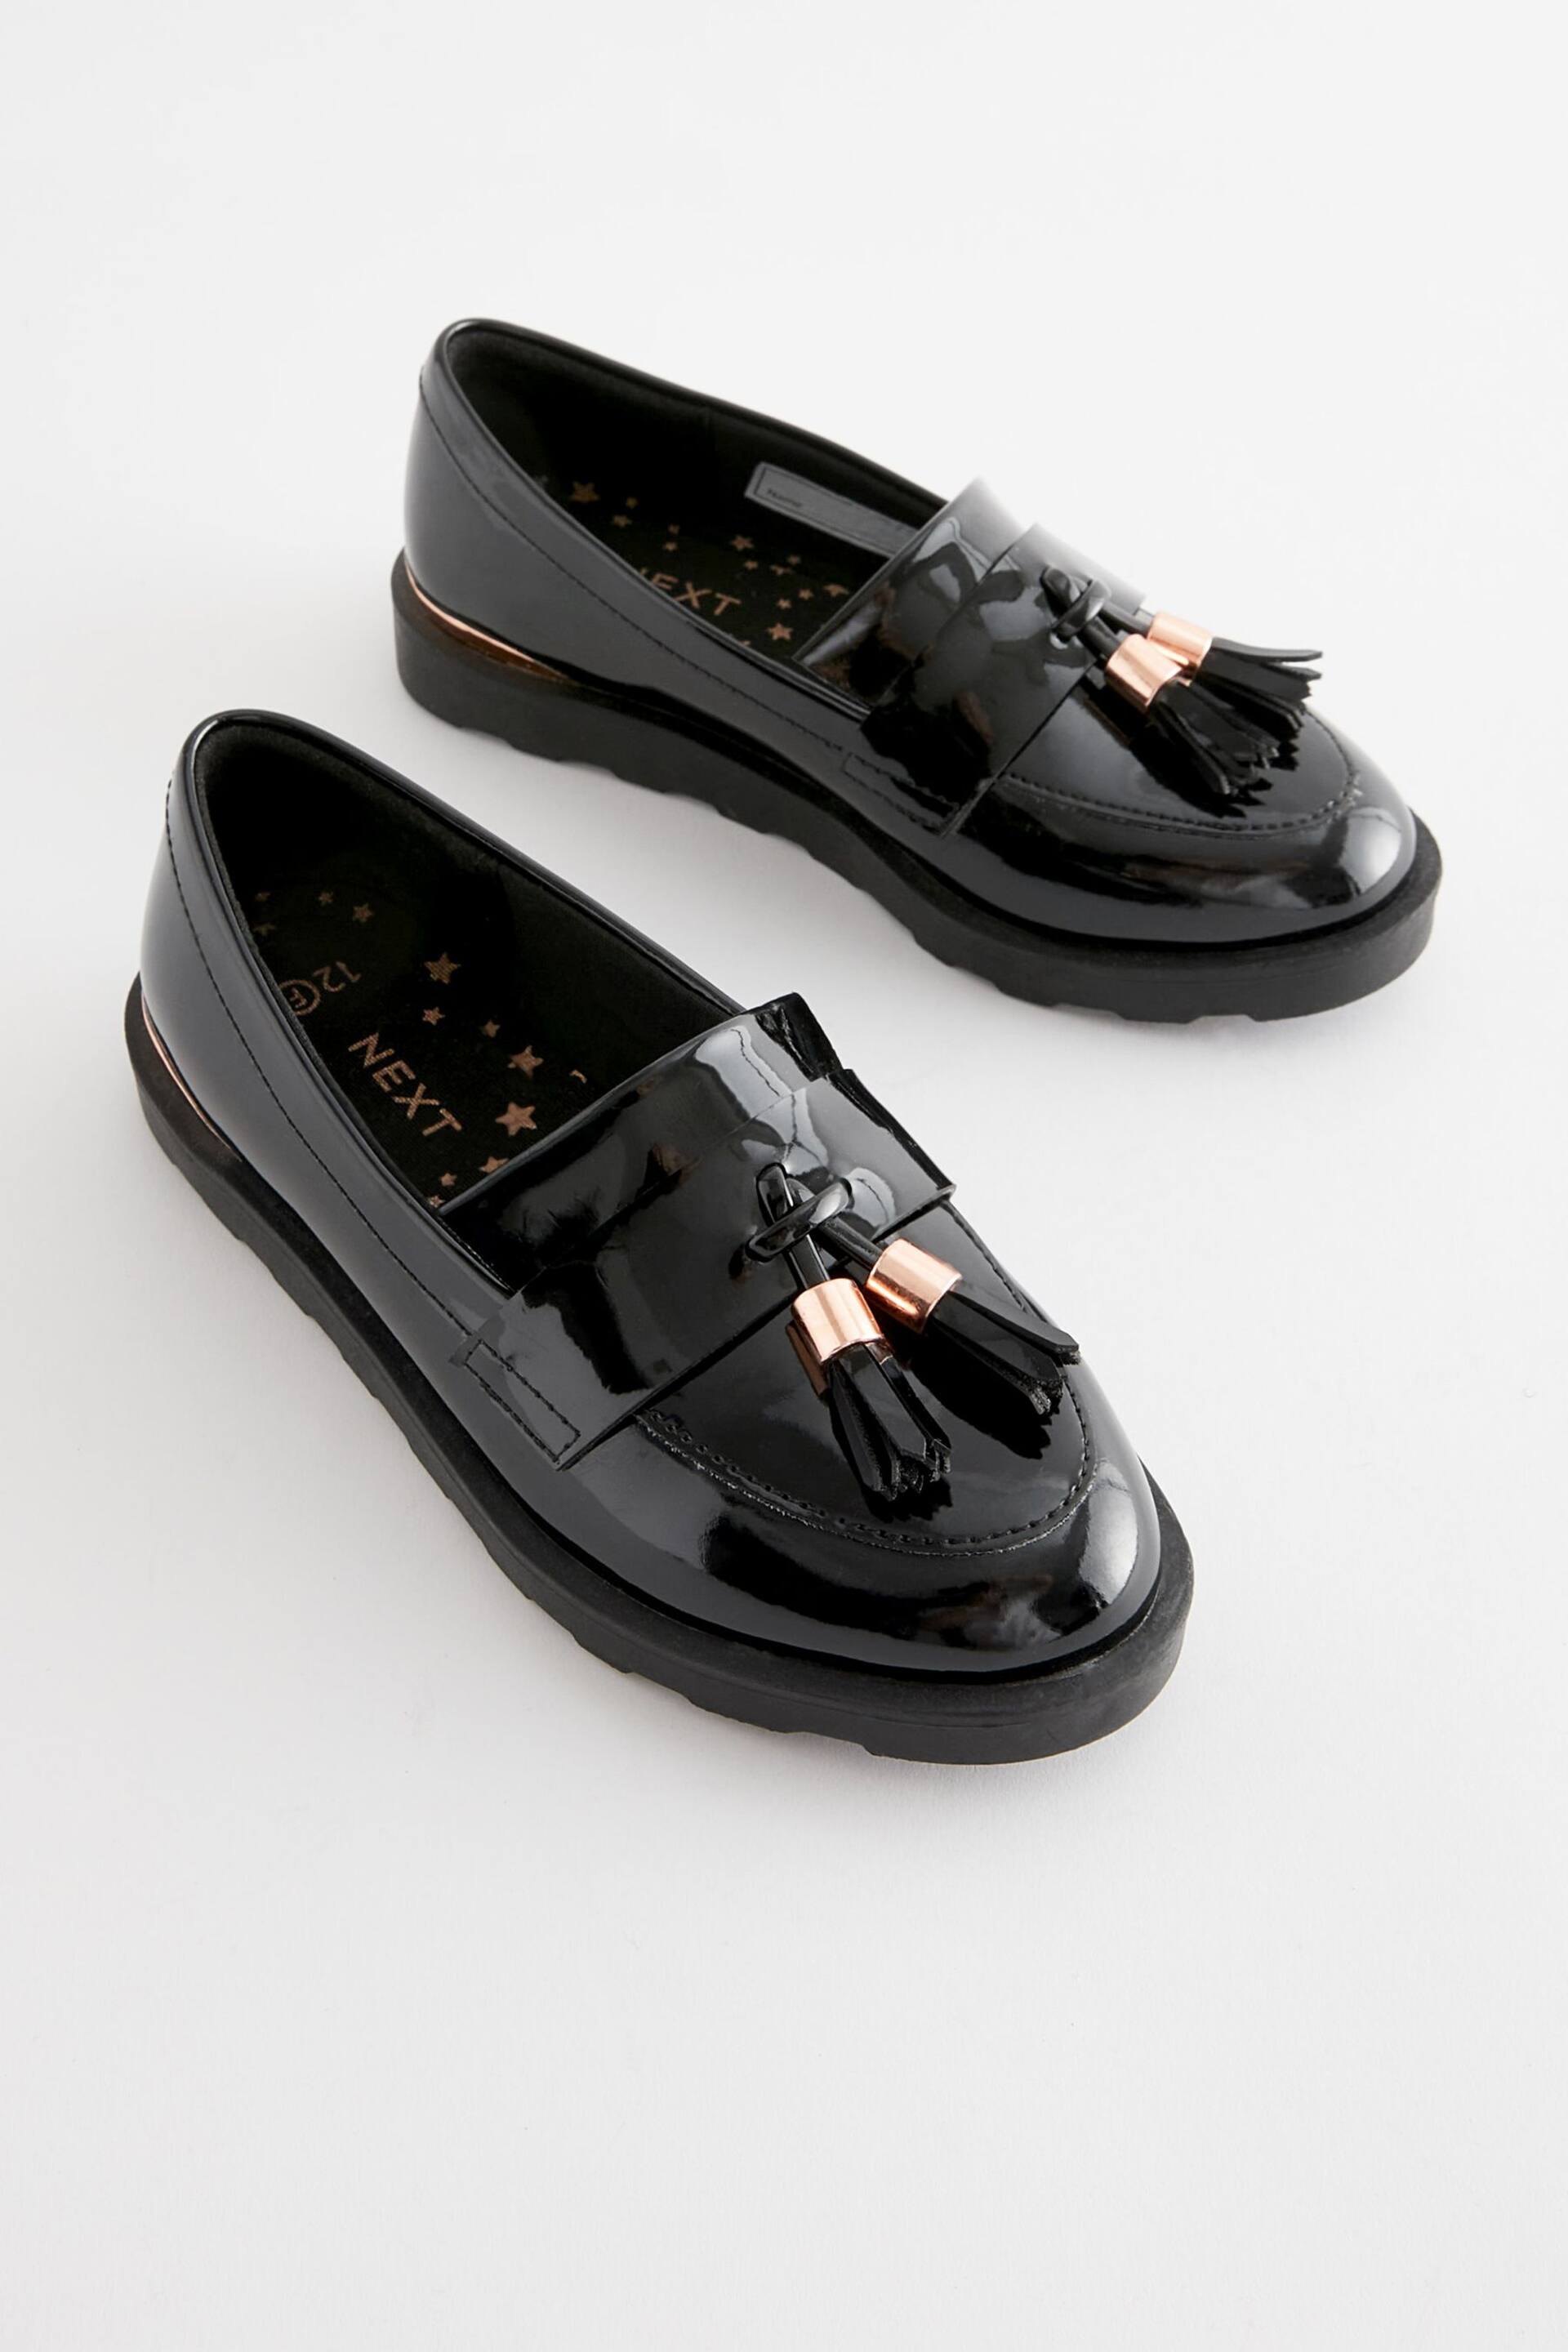 Black Rose Gold Standard Fit (F) School Tassel Loafers - Image 1 of 5